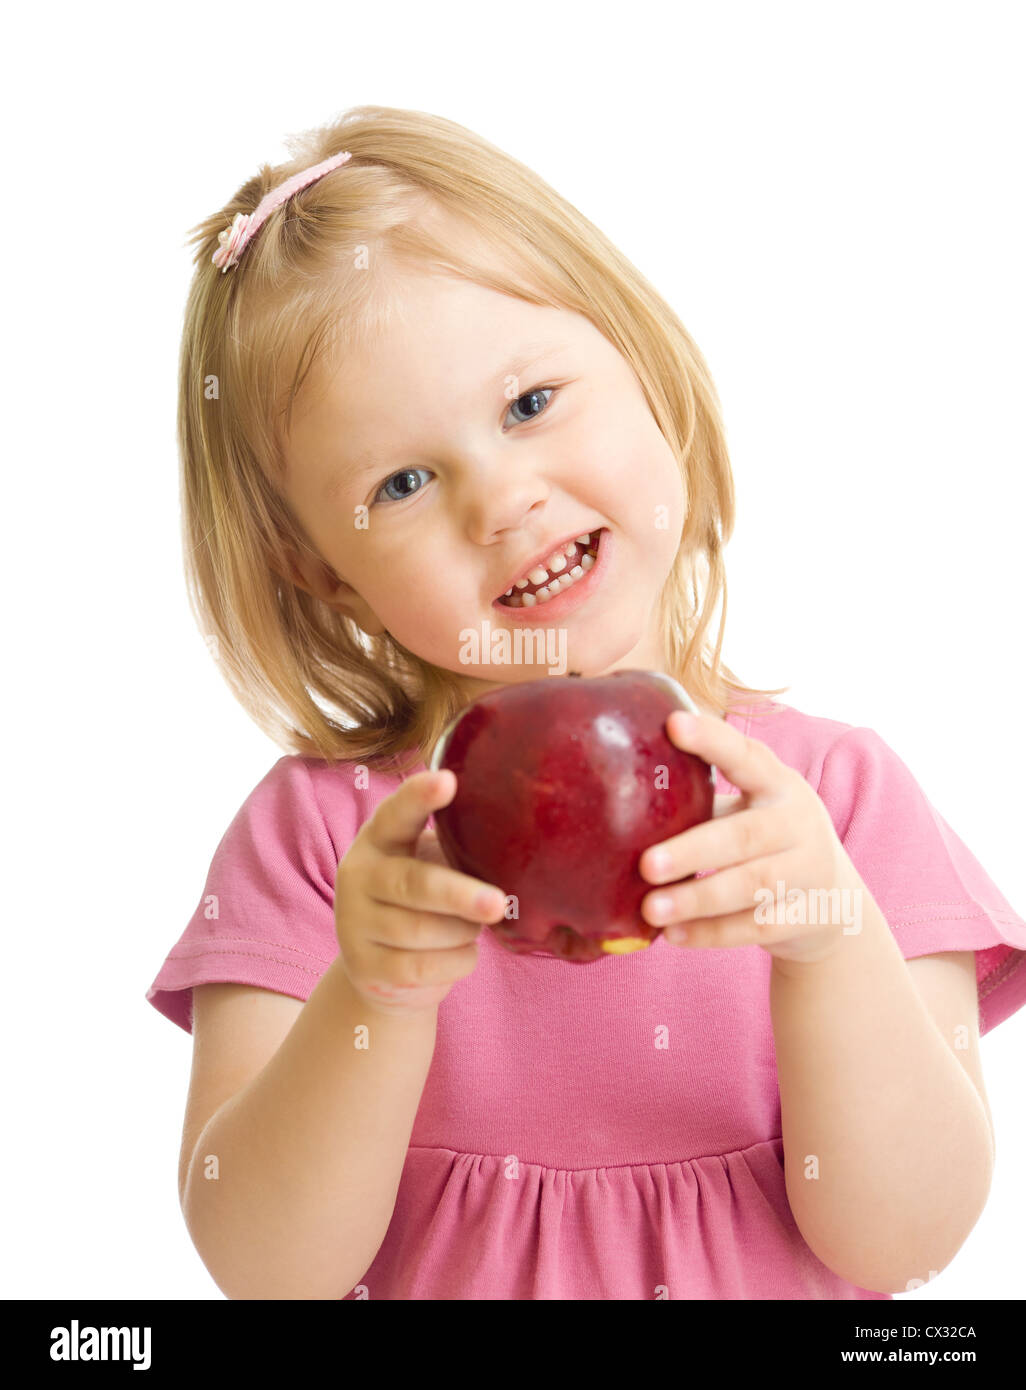 Kleines Mädchen Portrait Essen roten Apfel, isoliert Stockfoto